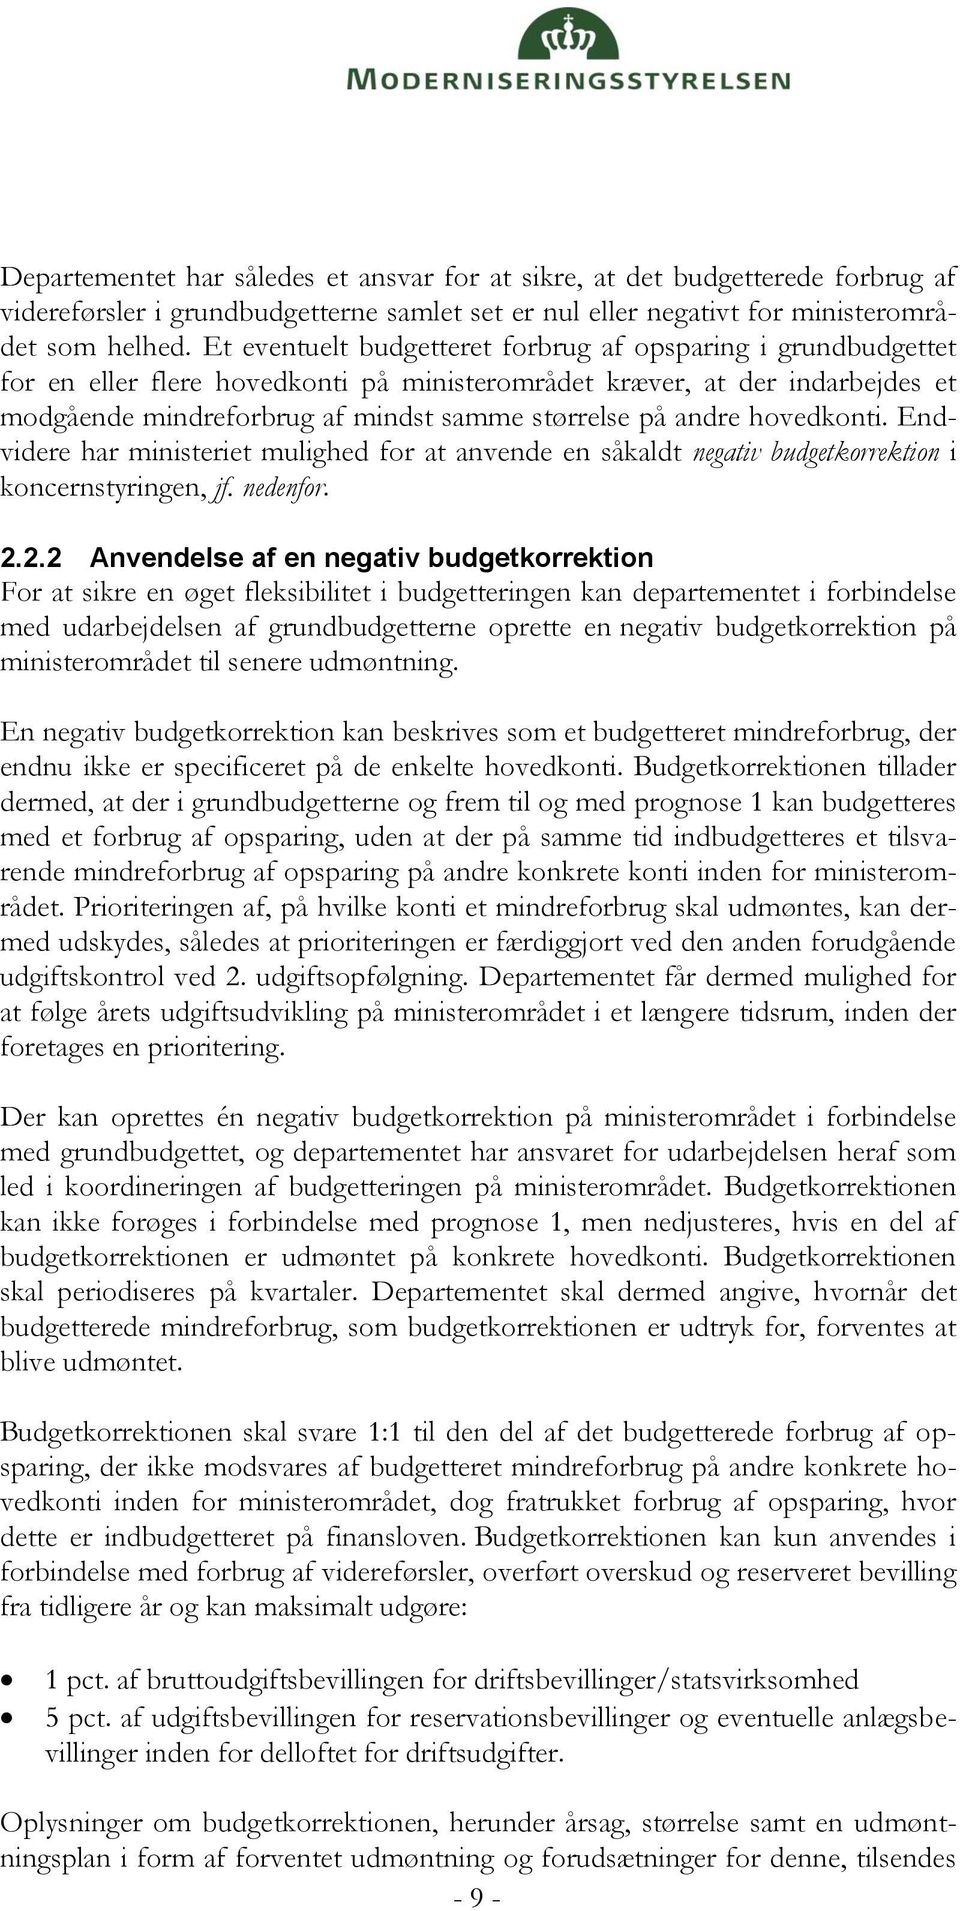 andre hovedkonti. Endvidere har ministeriet mulighed for at anvende en såkaldt negativ budgetkorrektion i koncernstyringen, jf. nedenfor. 2.